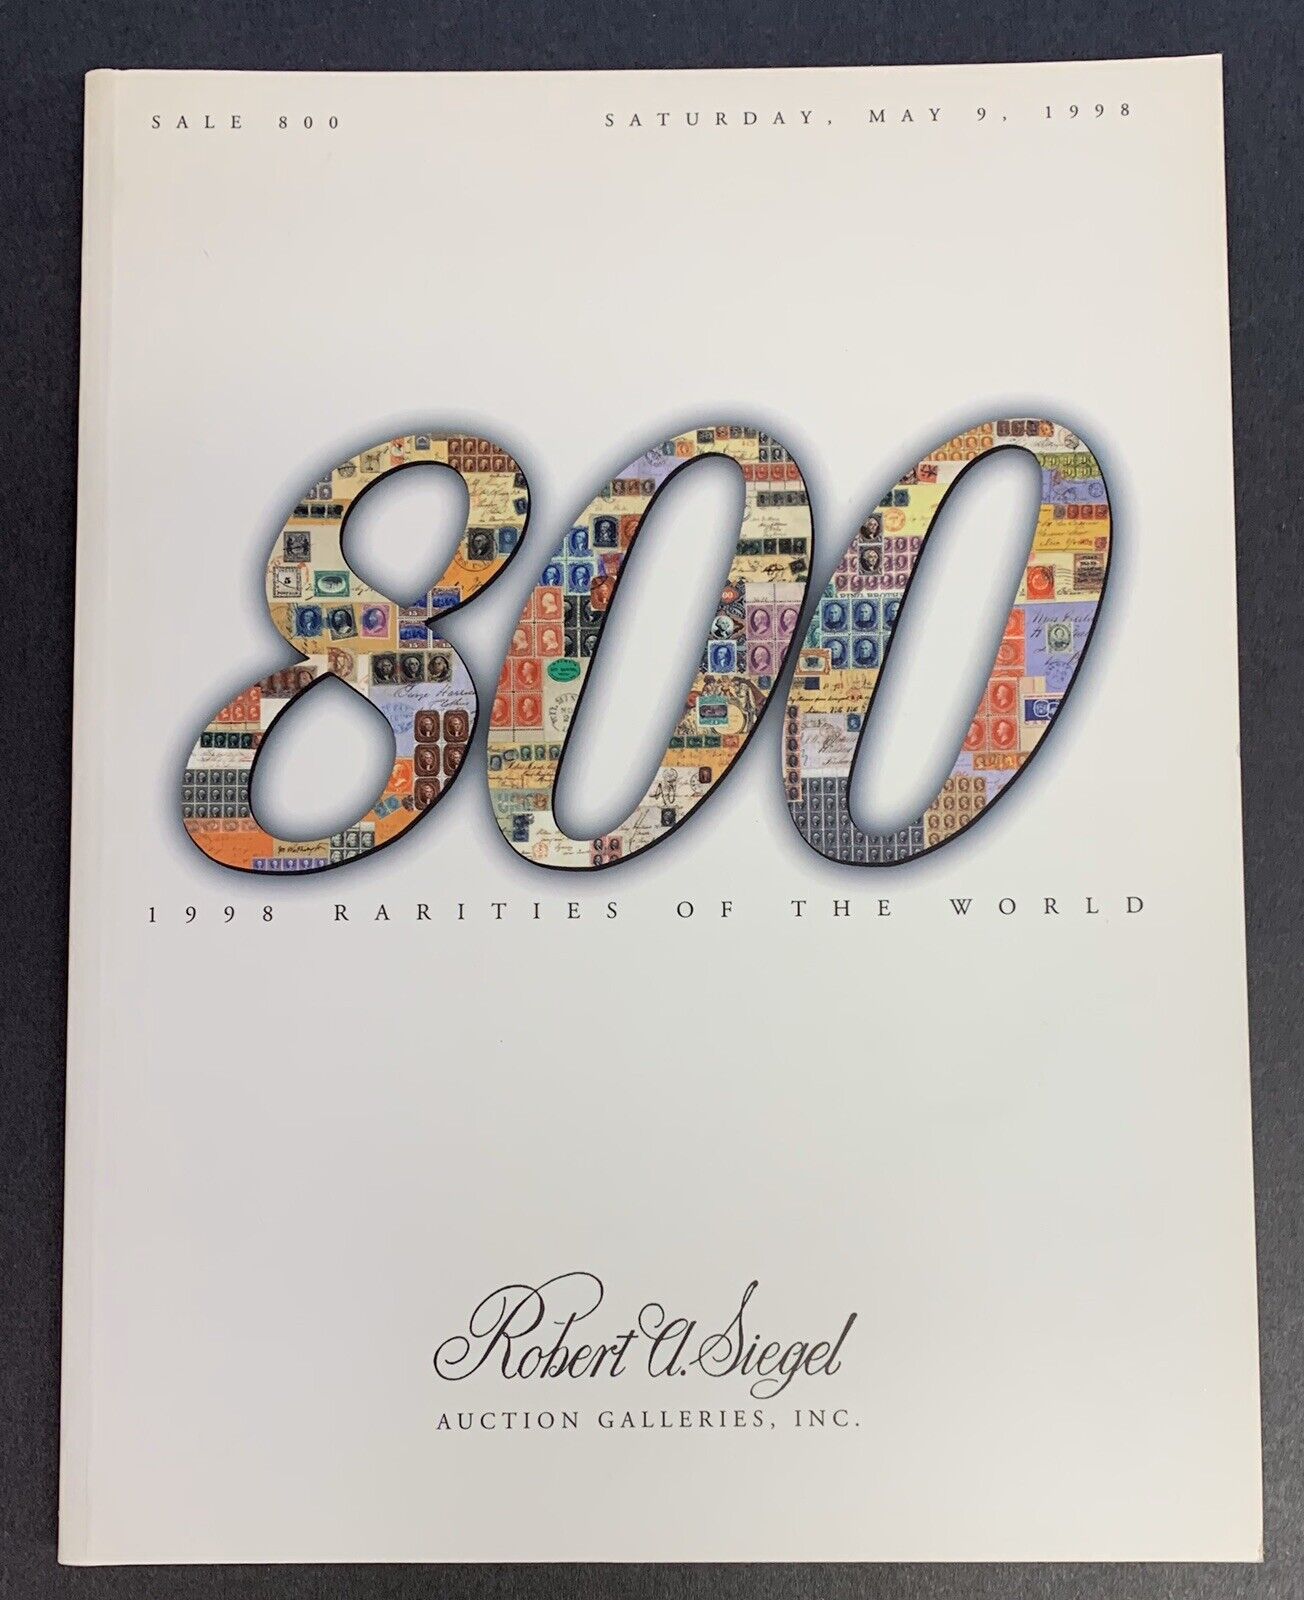 1998 Rarities of the World, Robert A. Siegel, Sale #800, May 9, 1998